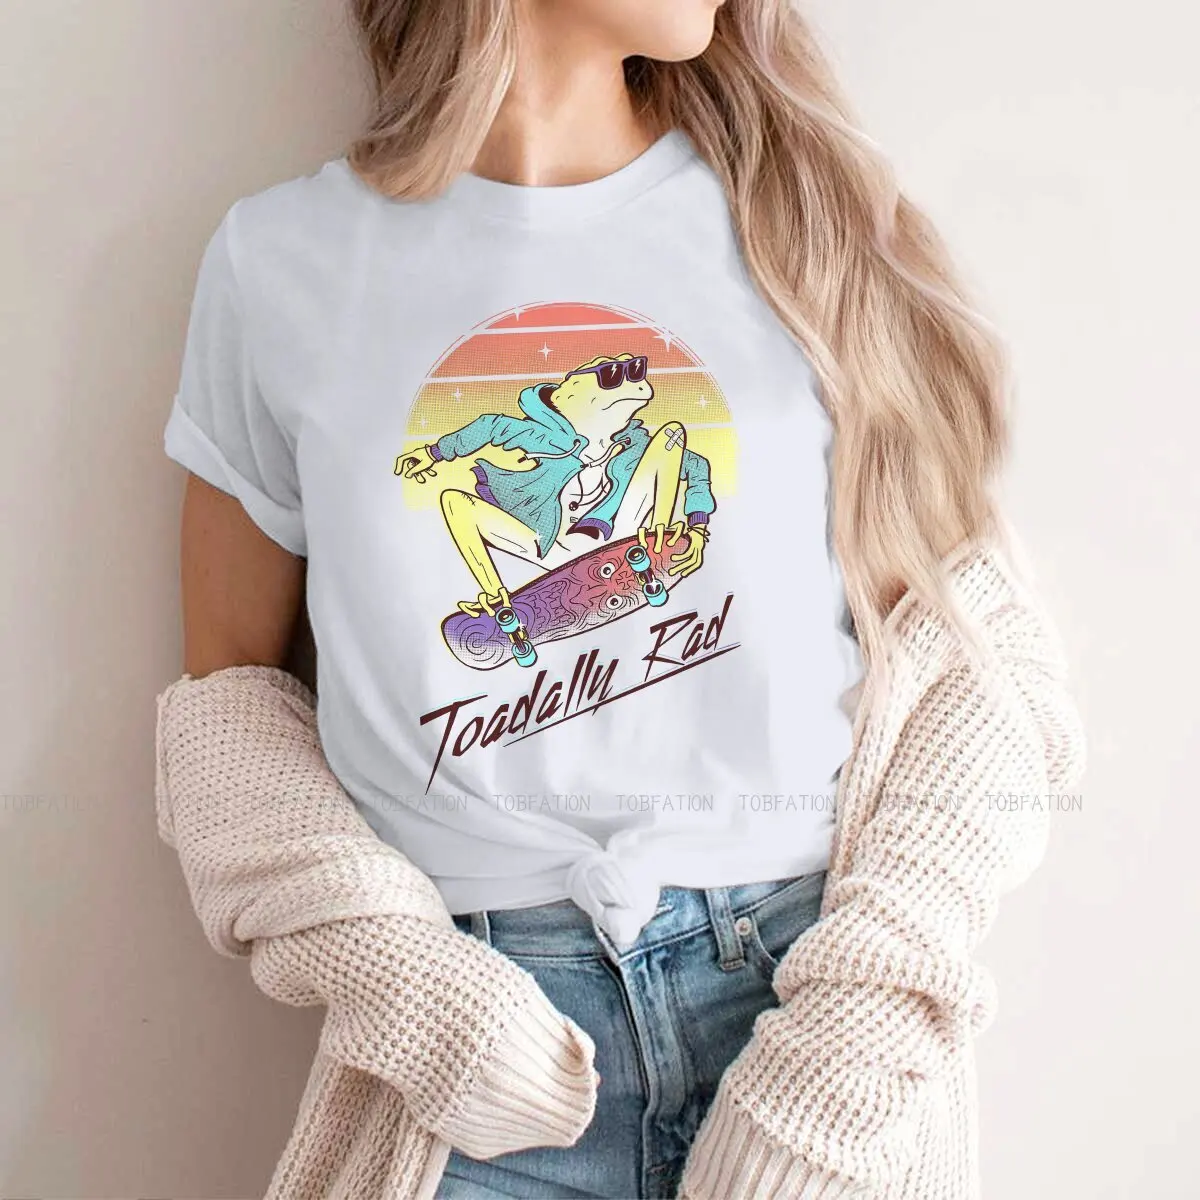 Toadally Rad  Print 4xl 5xl Woman's T Shirt New Trend Tops